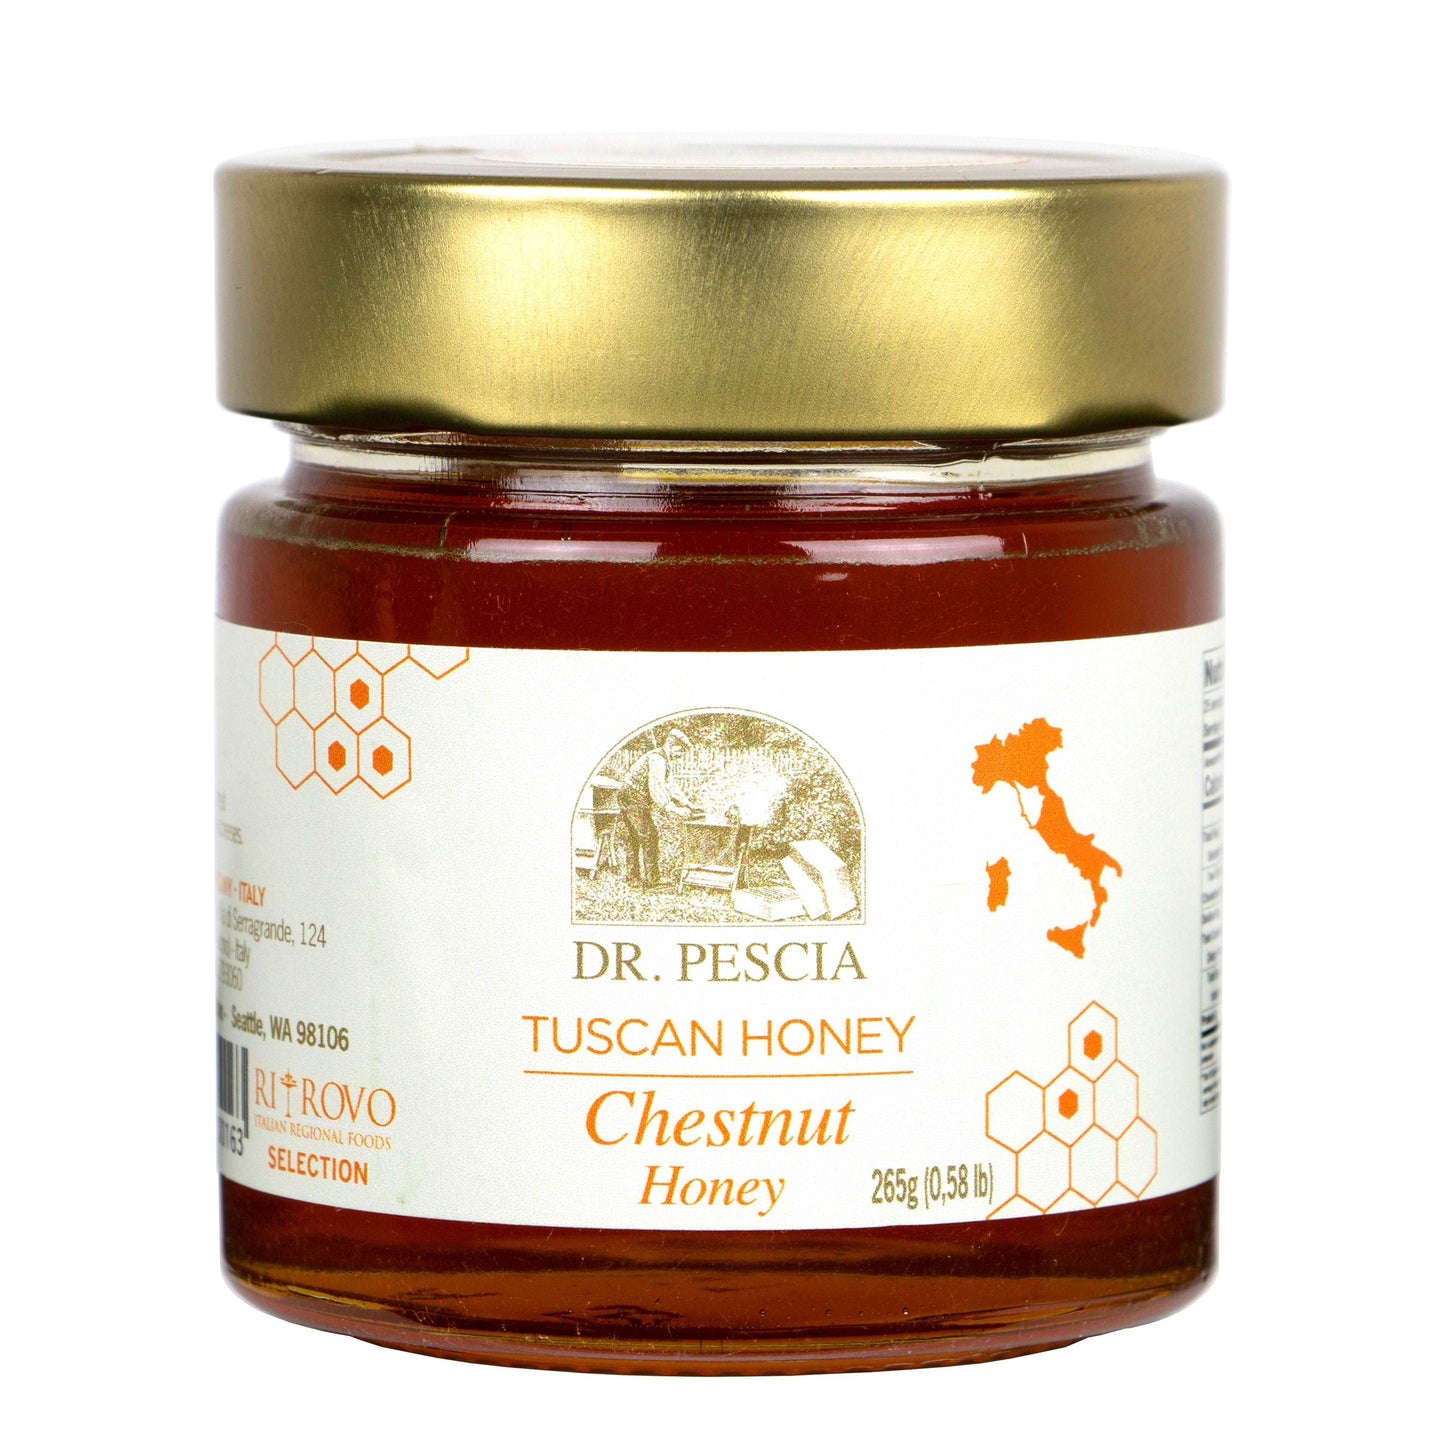 Dr. Pescia Chestnut Honey